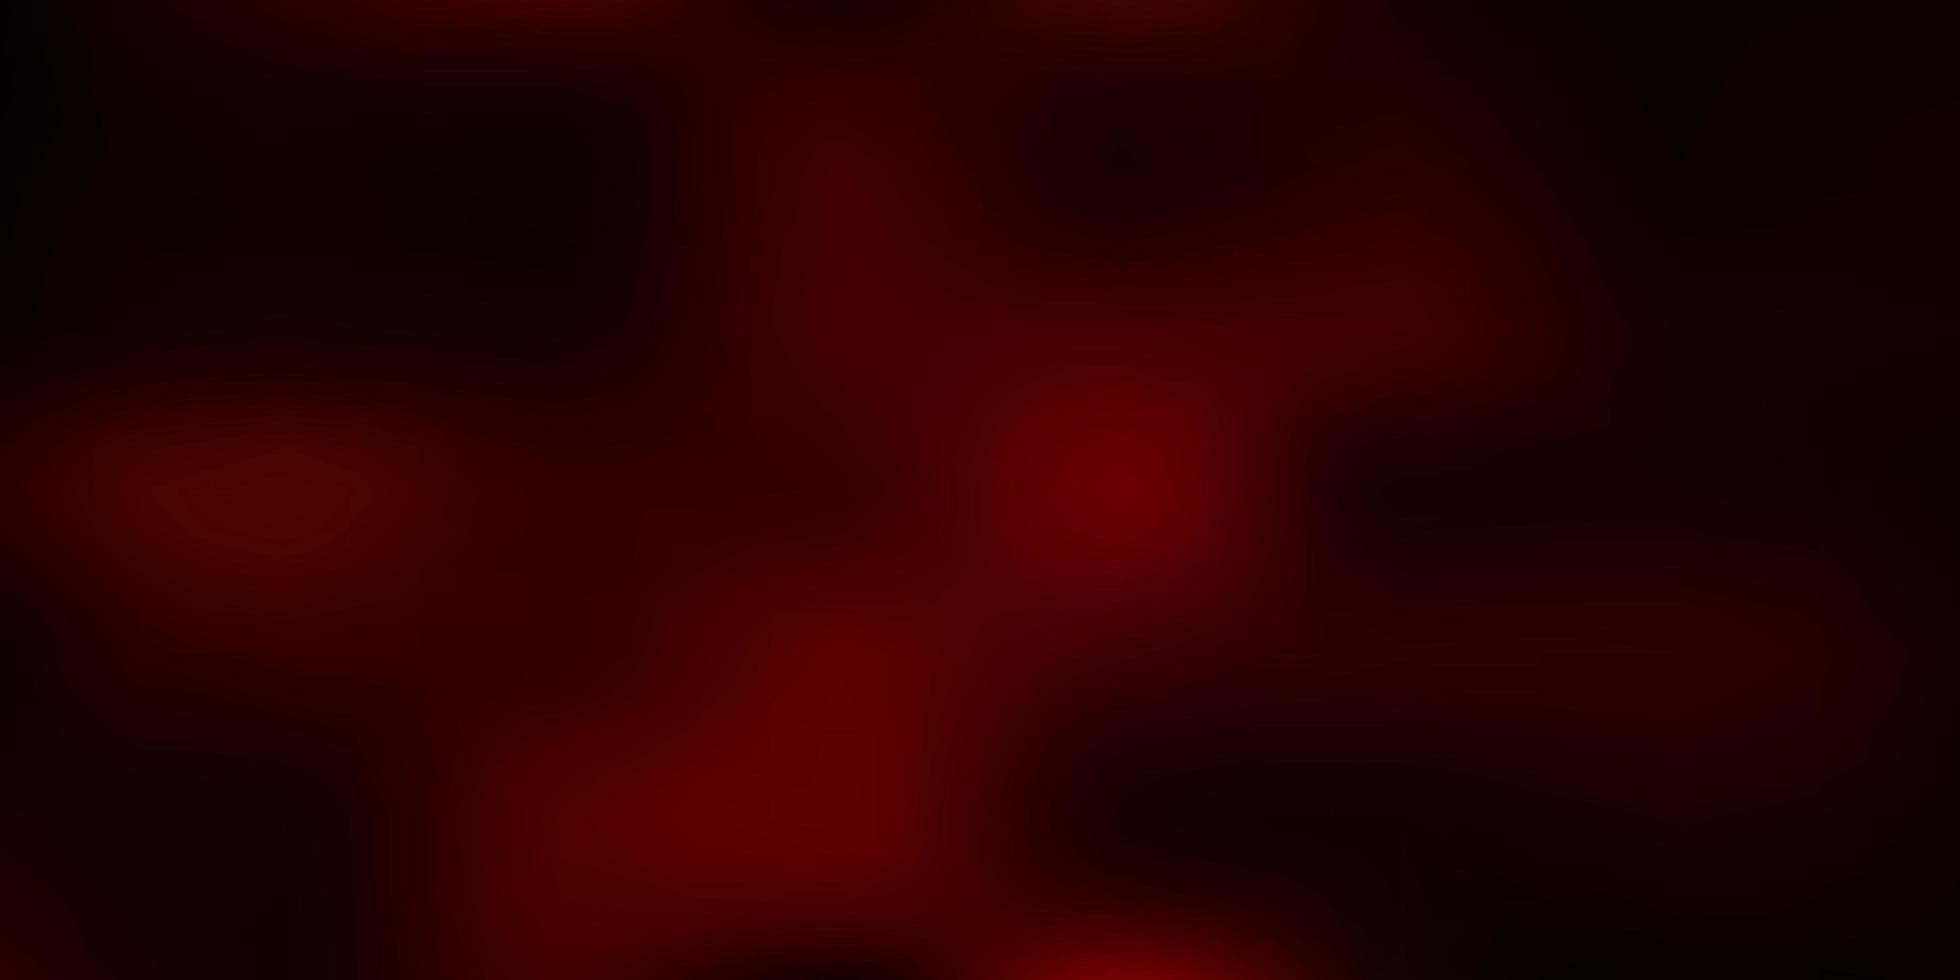 modelo de borrão abstrato de vetor vermelho escuro.